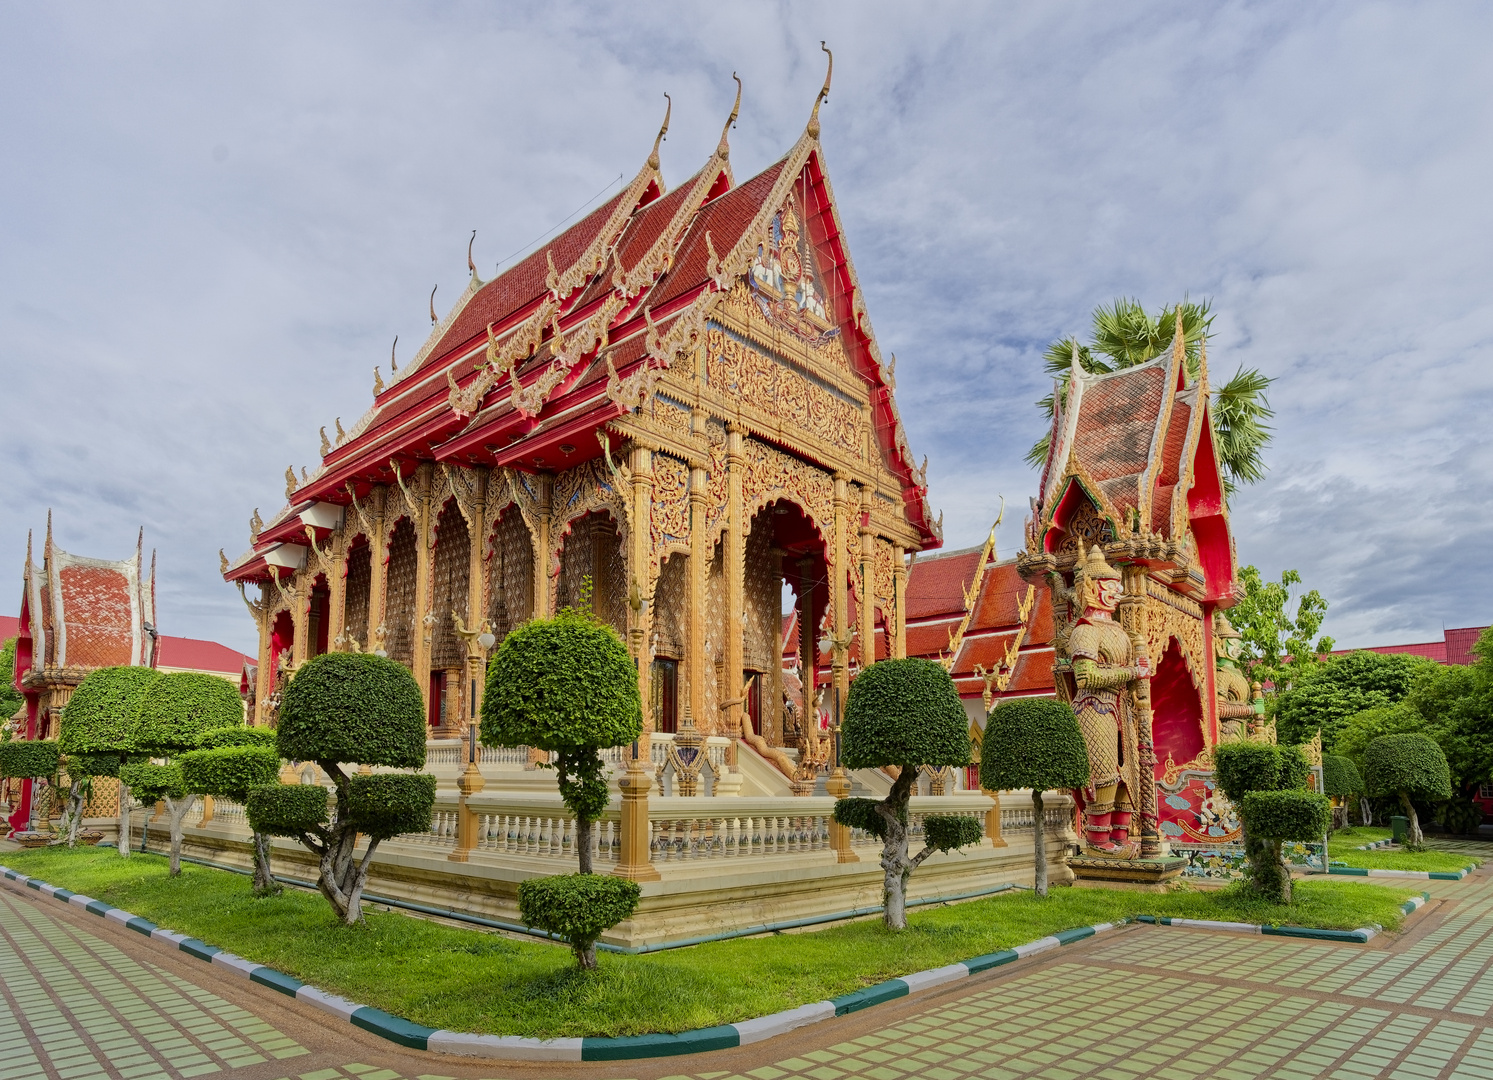 Nakhon Pathom - Wat Phai Lom